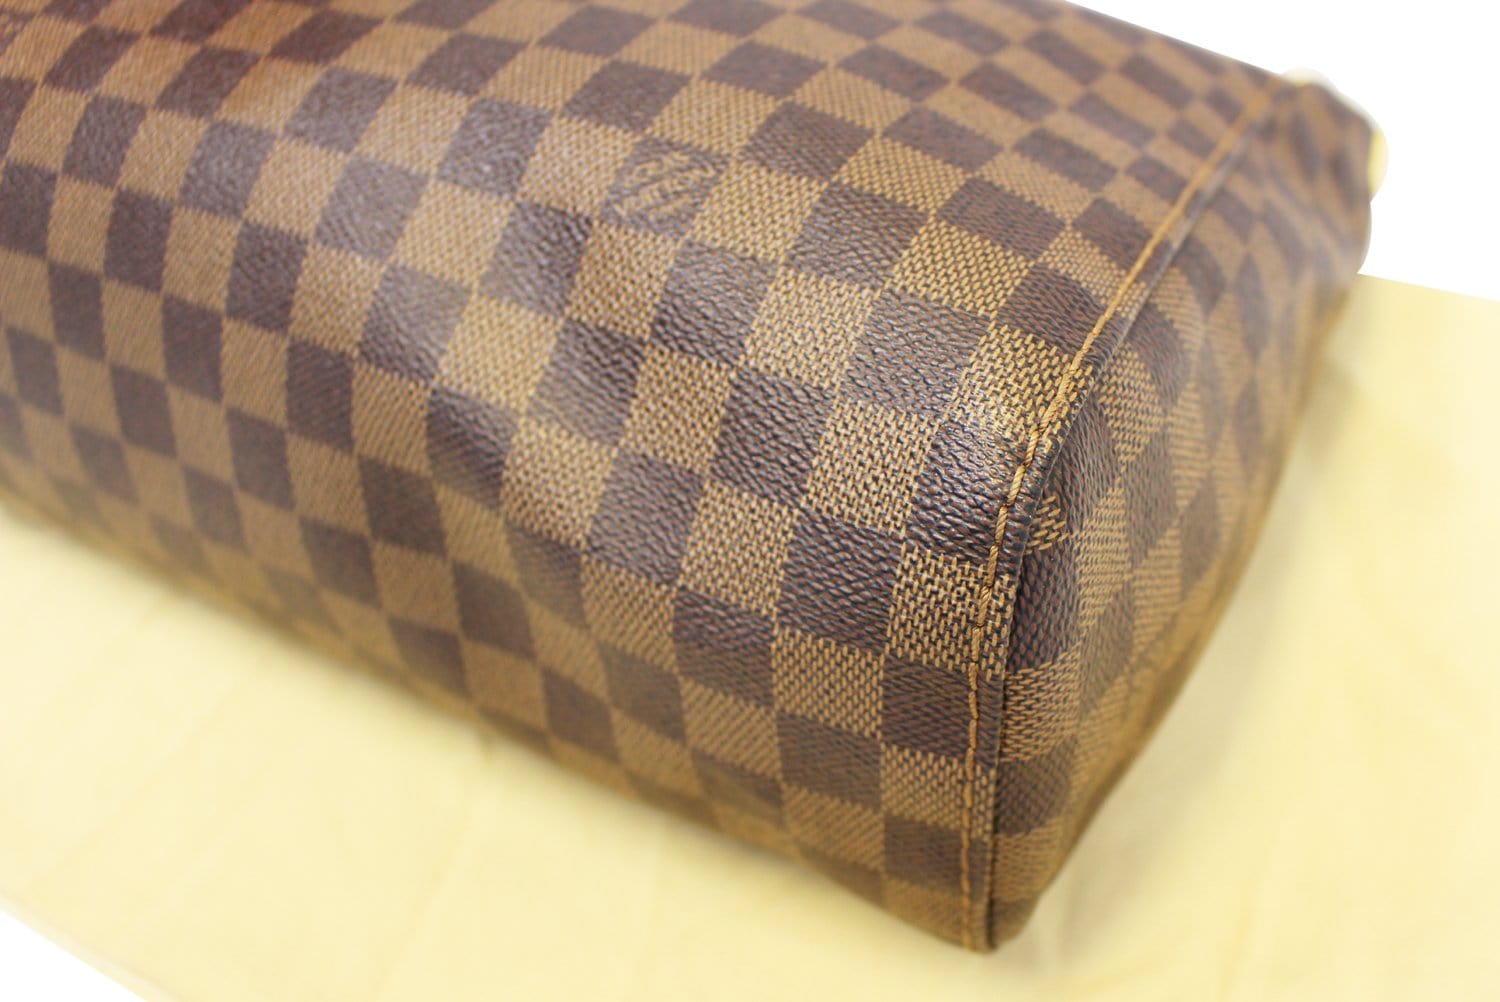 Louis Vuitton Damier Ebene Portobello PM - ShopStyle Satchels & Top Handle  Bags